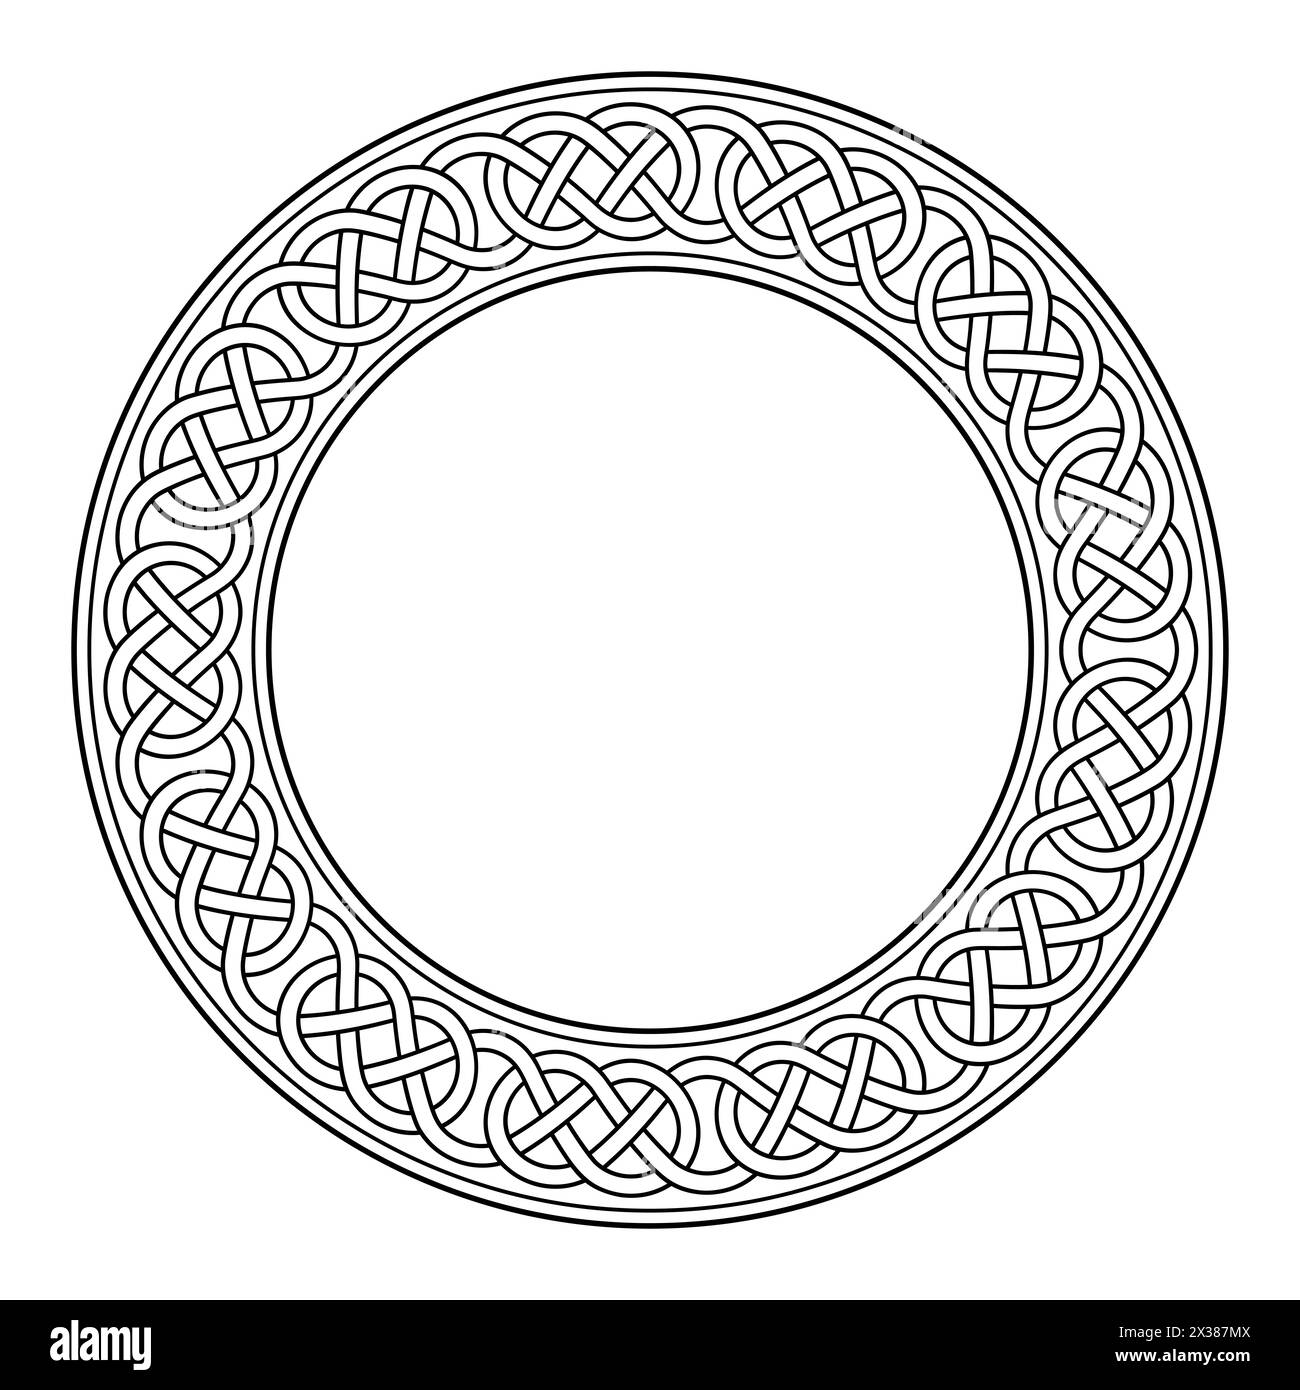 Cadre circulaire avec noeud de bordure de boucle celtique. Bordure décorative avec un motif dans le style celtique typique. Lignes entrelacées formant des noeuds d'élingue. Banque D'Images